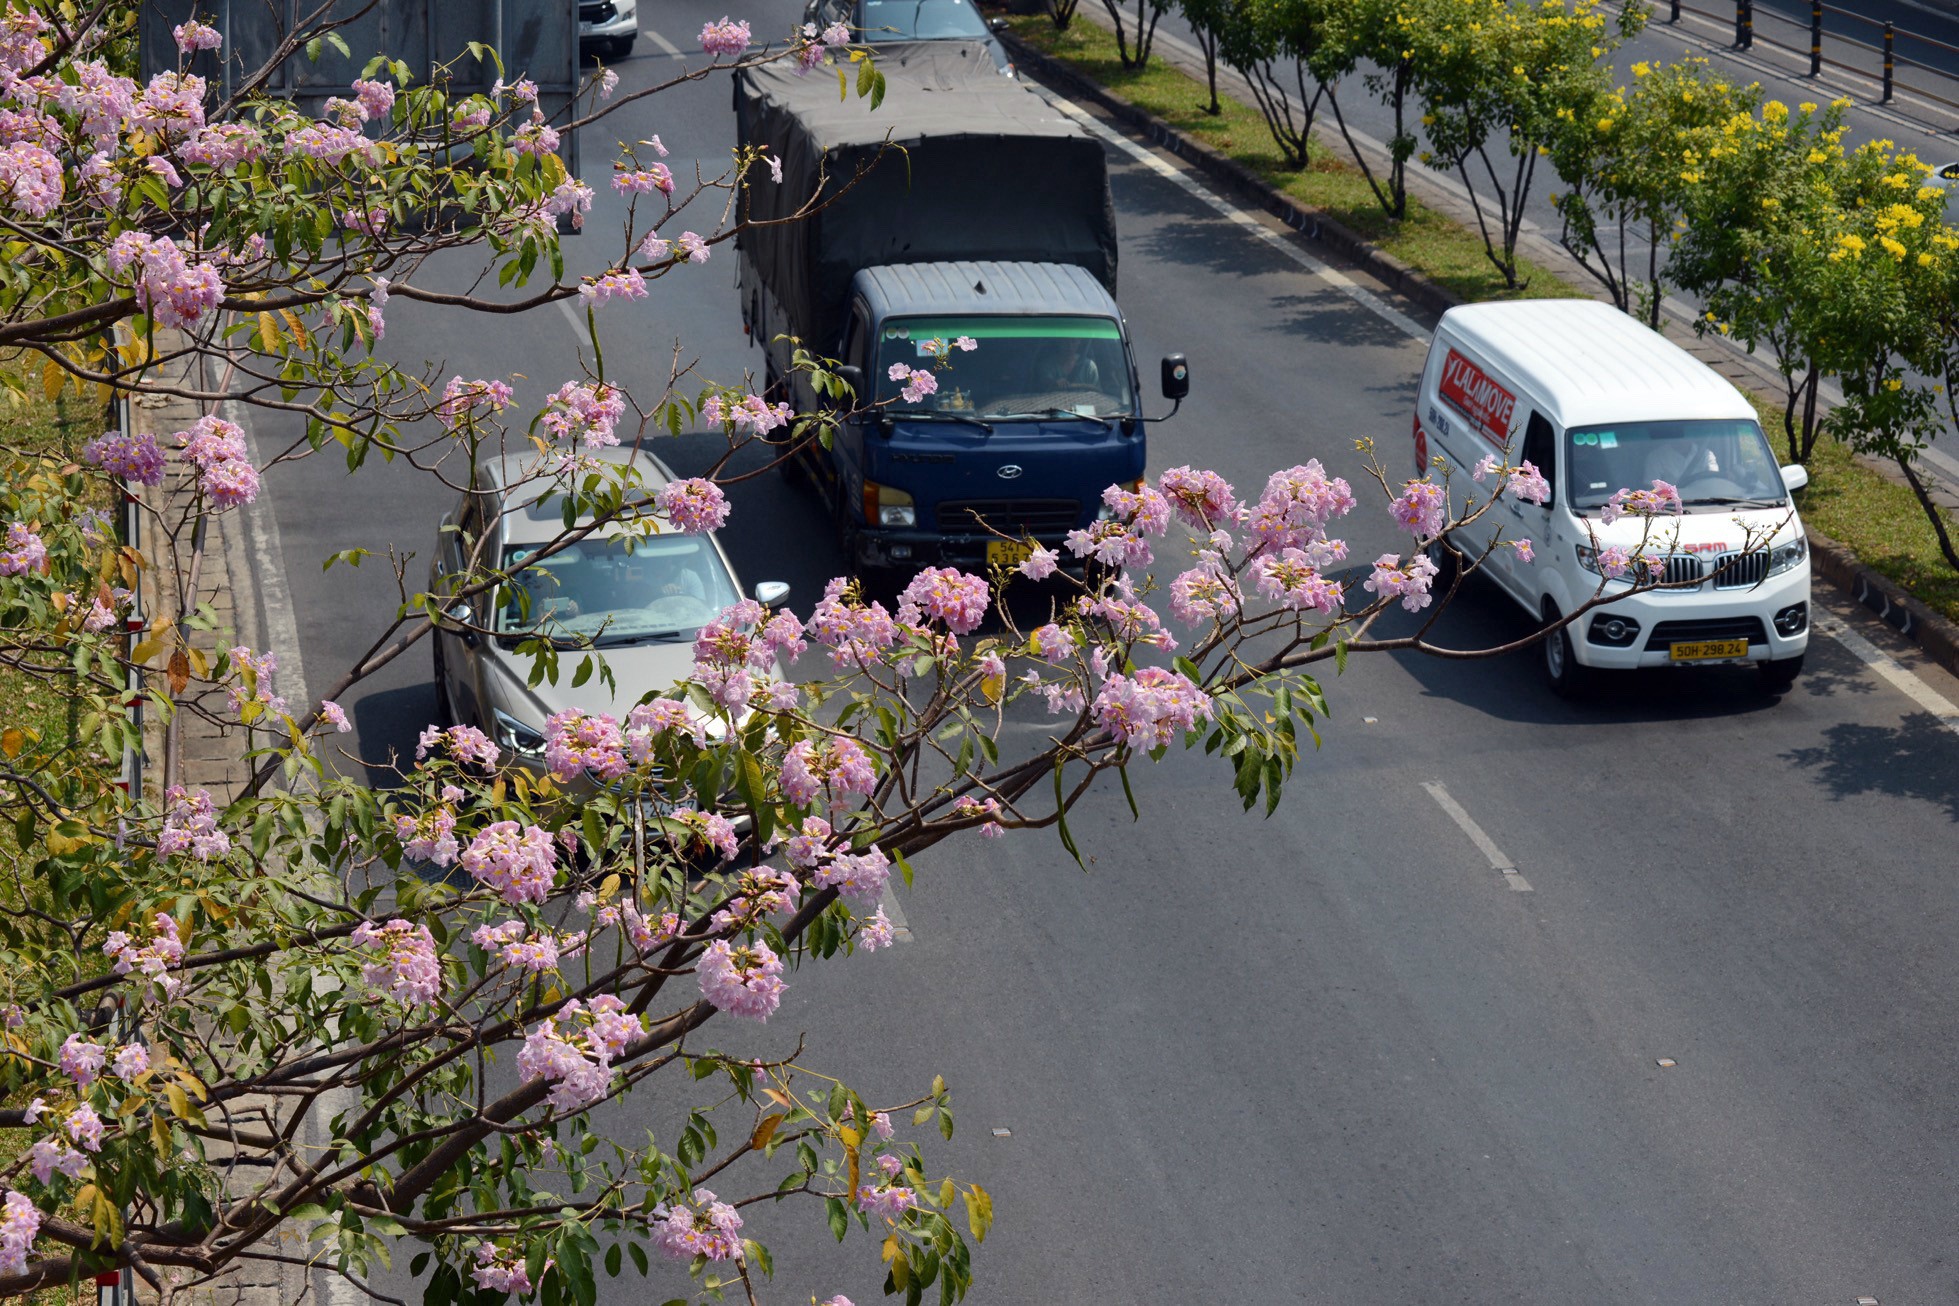 Kèn hồng thường nở rộ vào khoảng tháng 4, khi tiết trời dần chuyển sang hè. Năm nay, hoa nở sớm, từ tháng 2 trên nhiều tuyến đường đã thấy hoa kèn hồng khoe sắc.